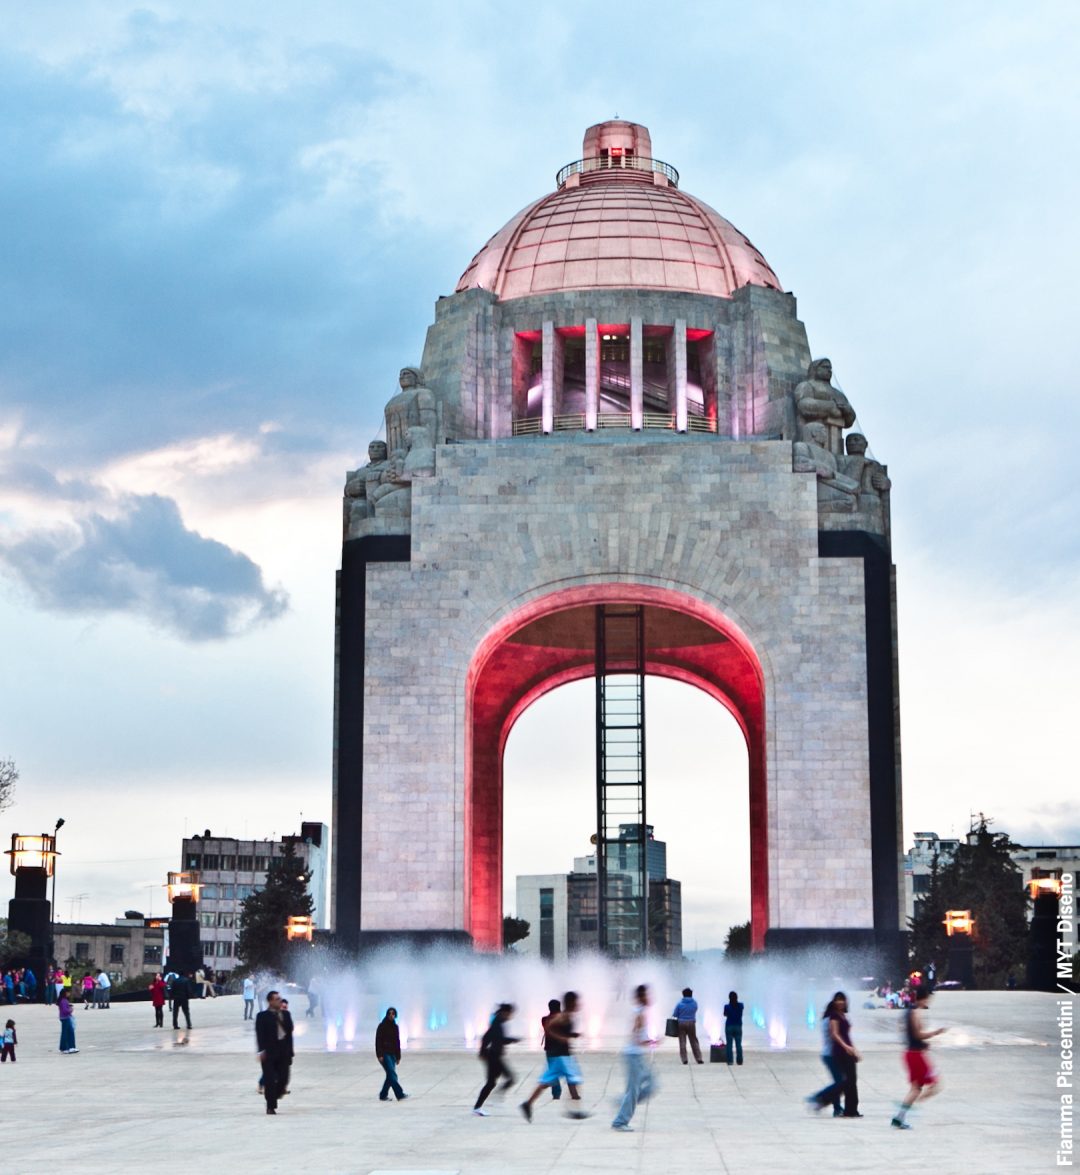 Città del Messico: come festeggiare a Natale e Capodanno